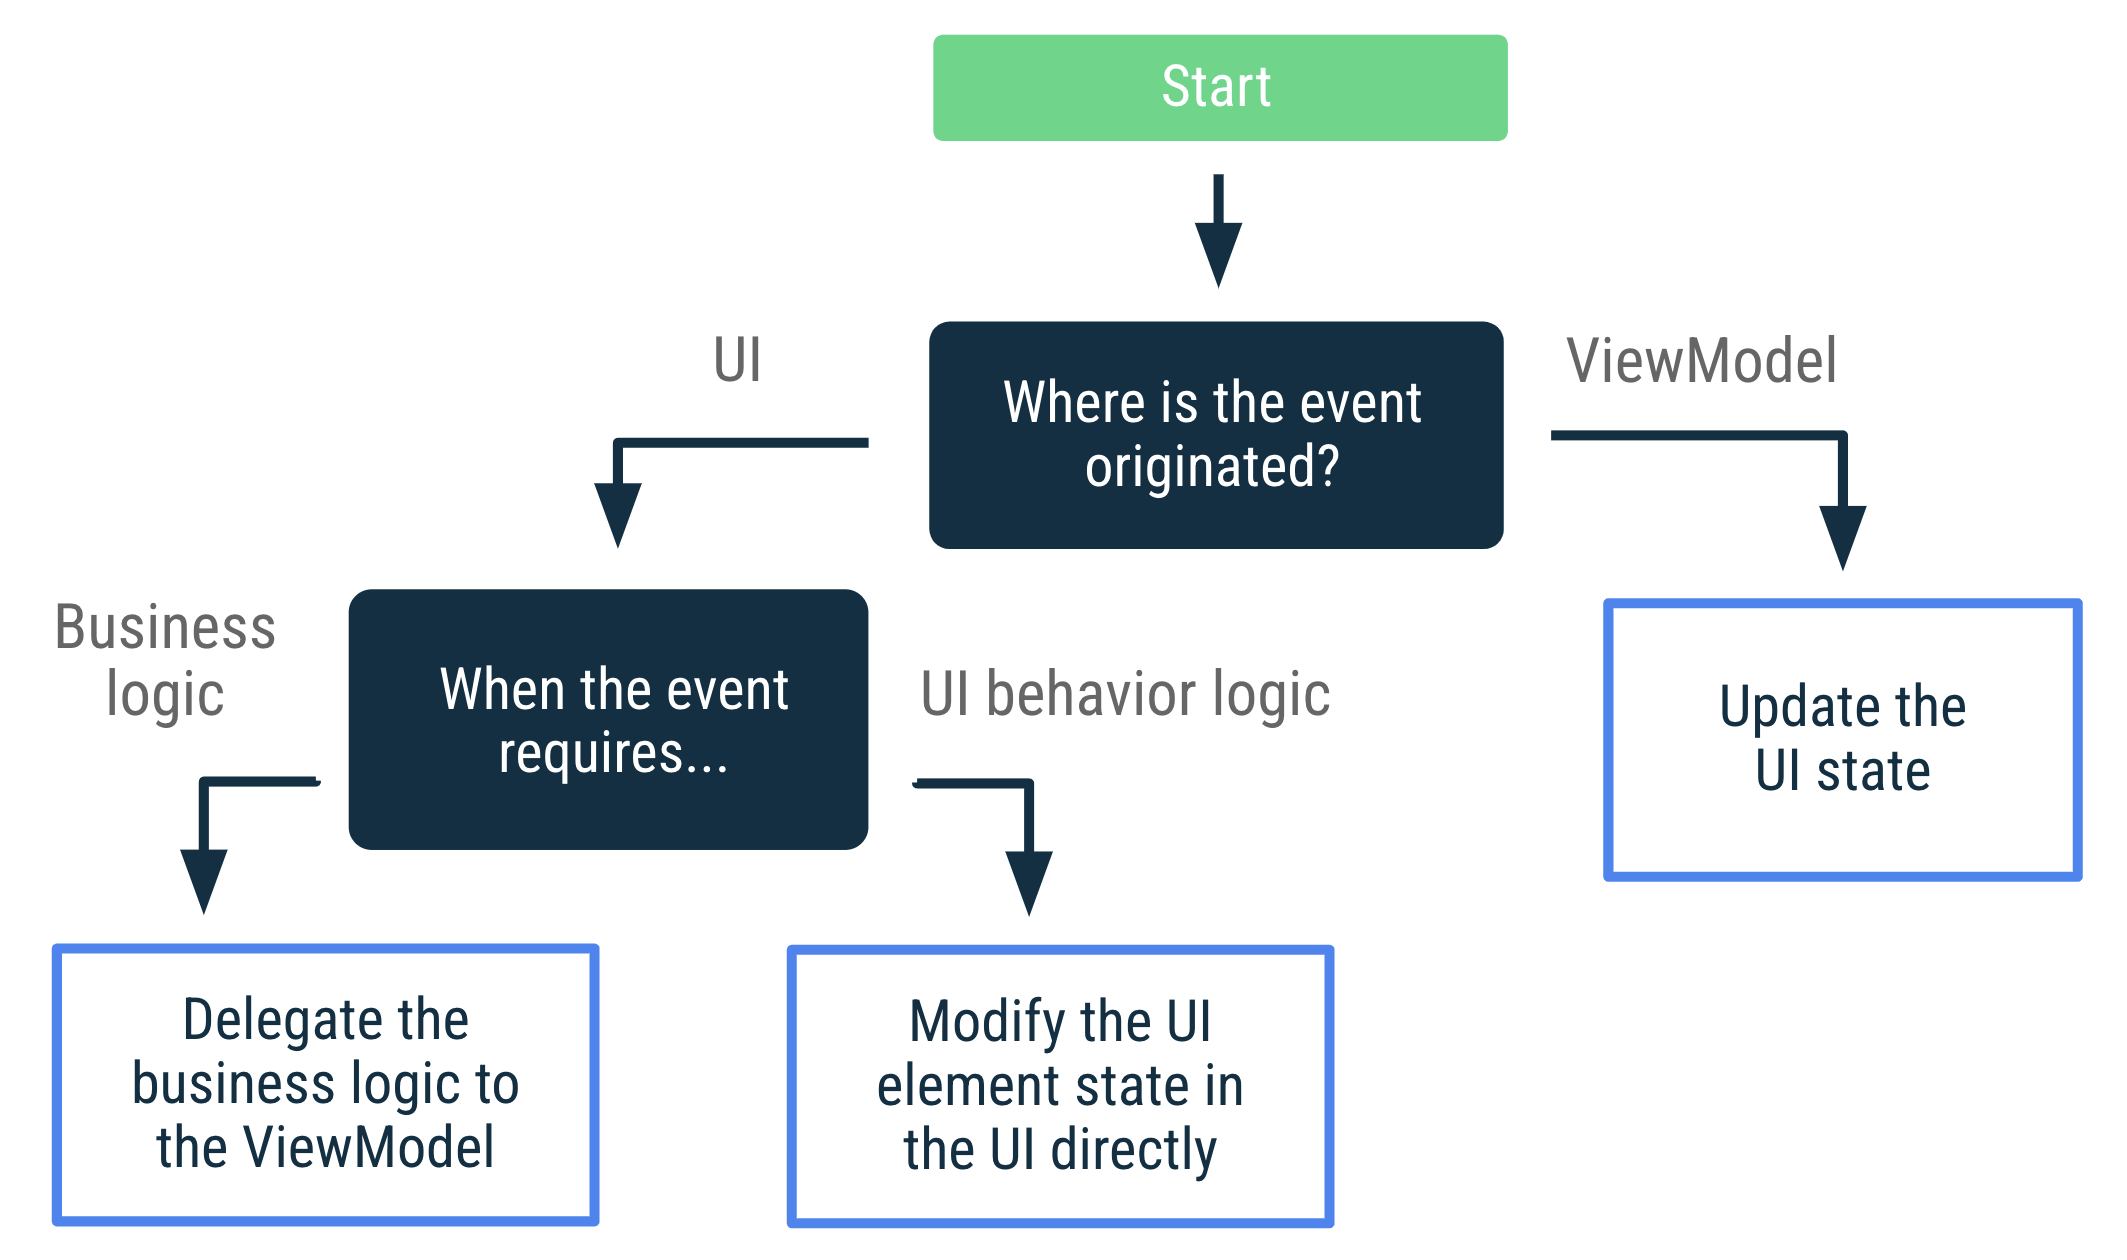 이벤트가 ViewModel에서 시작된 경우 UI 상태를 업데이트합니다. 이벤트가 UI에서 시작되었고 비즈니스 로직이 필요한 경우 비즈니스 로직을 ViewModel에 위임합니다. 이벤트가 UI에서 시작되었고 UI 동작 로직이 필요한 경우 UI에서 직접 UI 요소 상태를 수정합니다.